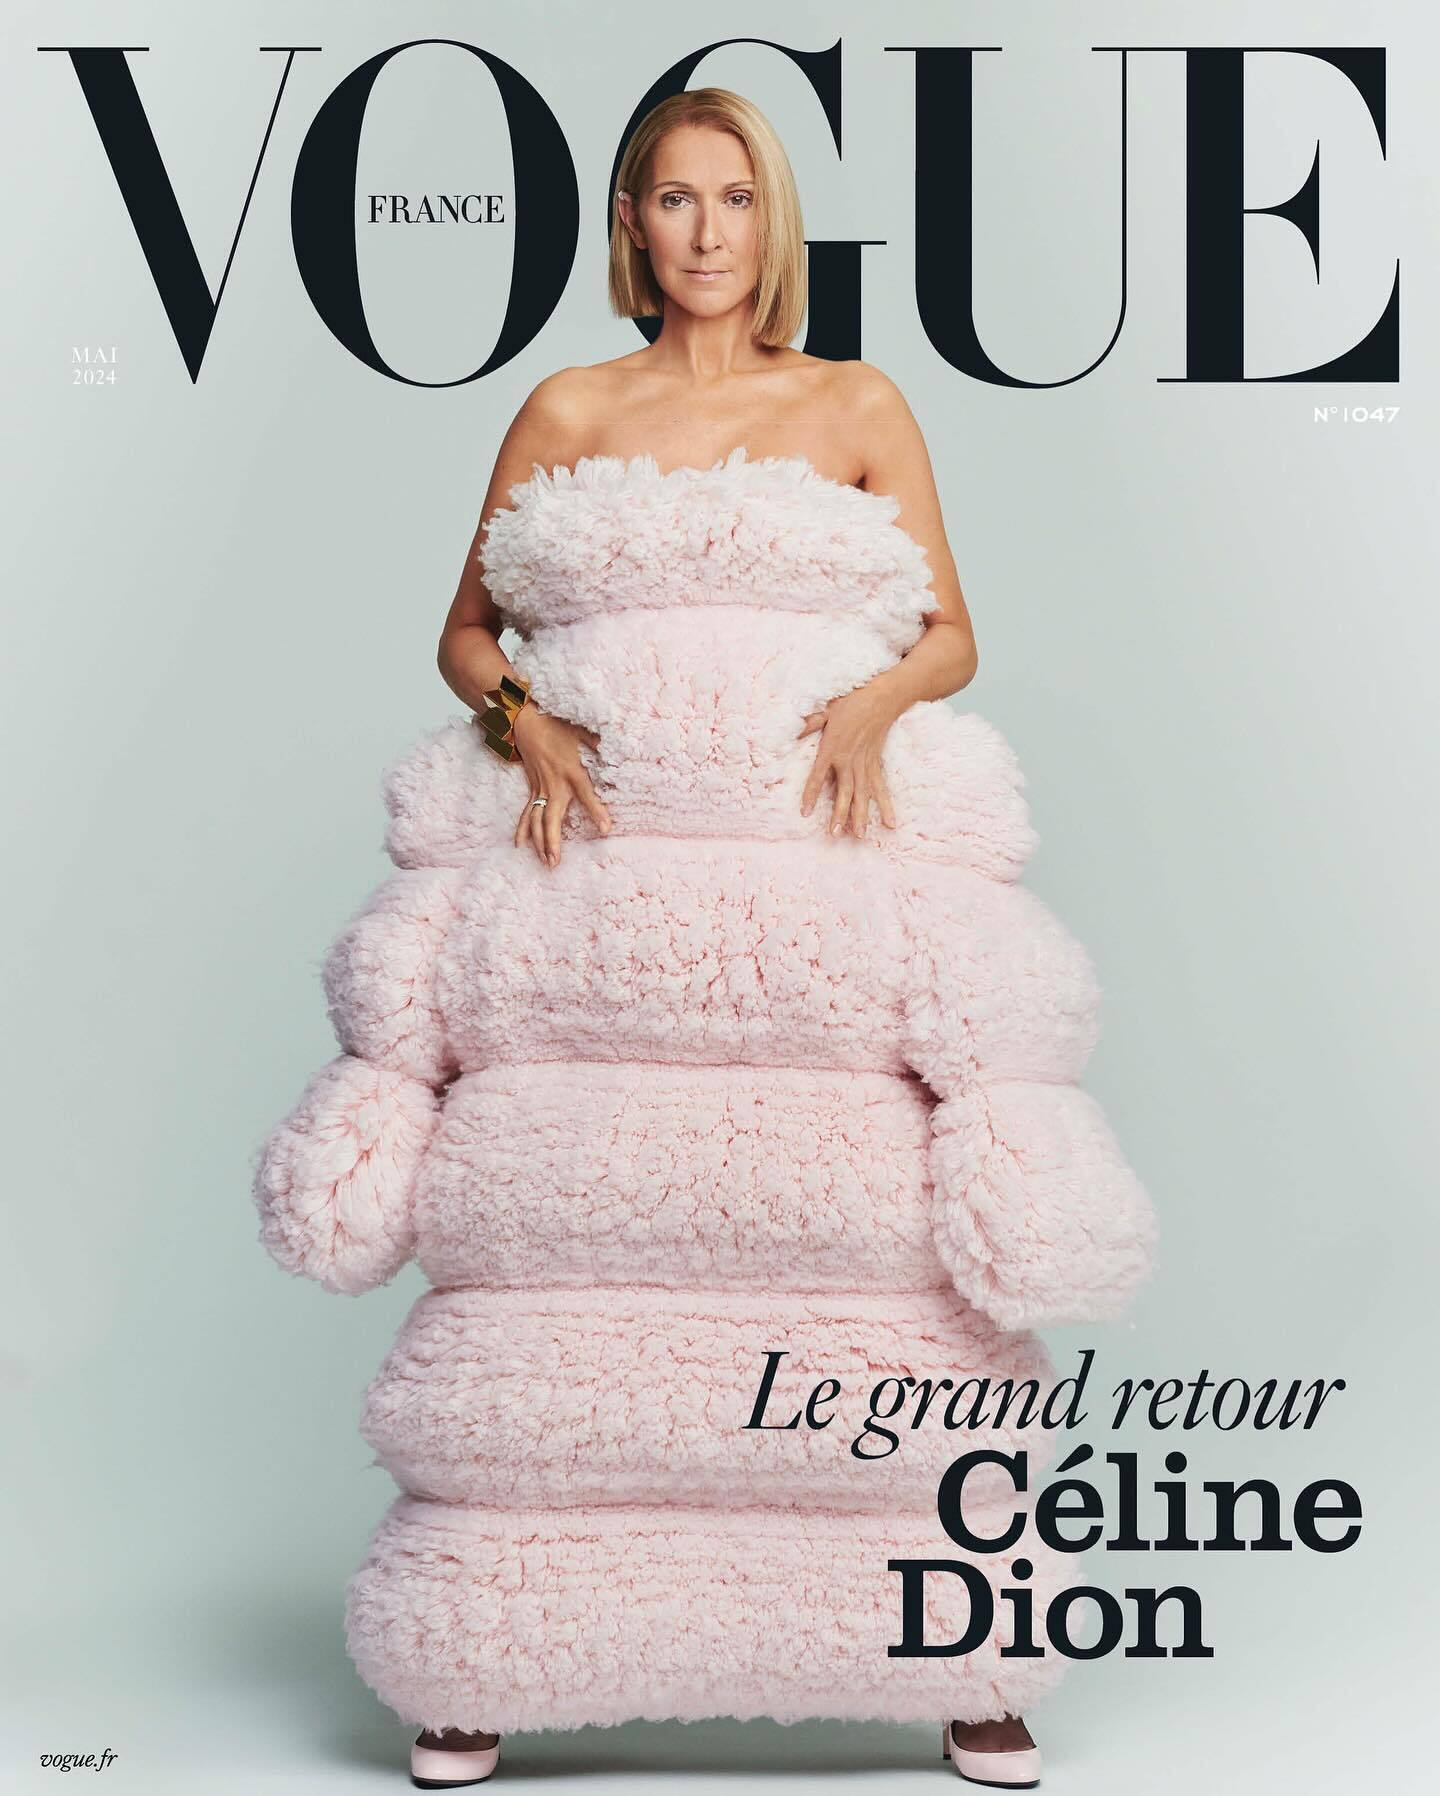 Тяжелобольная Селин Дион появилась на обложке Vogue в мягком "платье-облаке" и без бюстгальтера